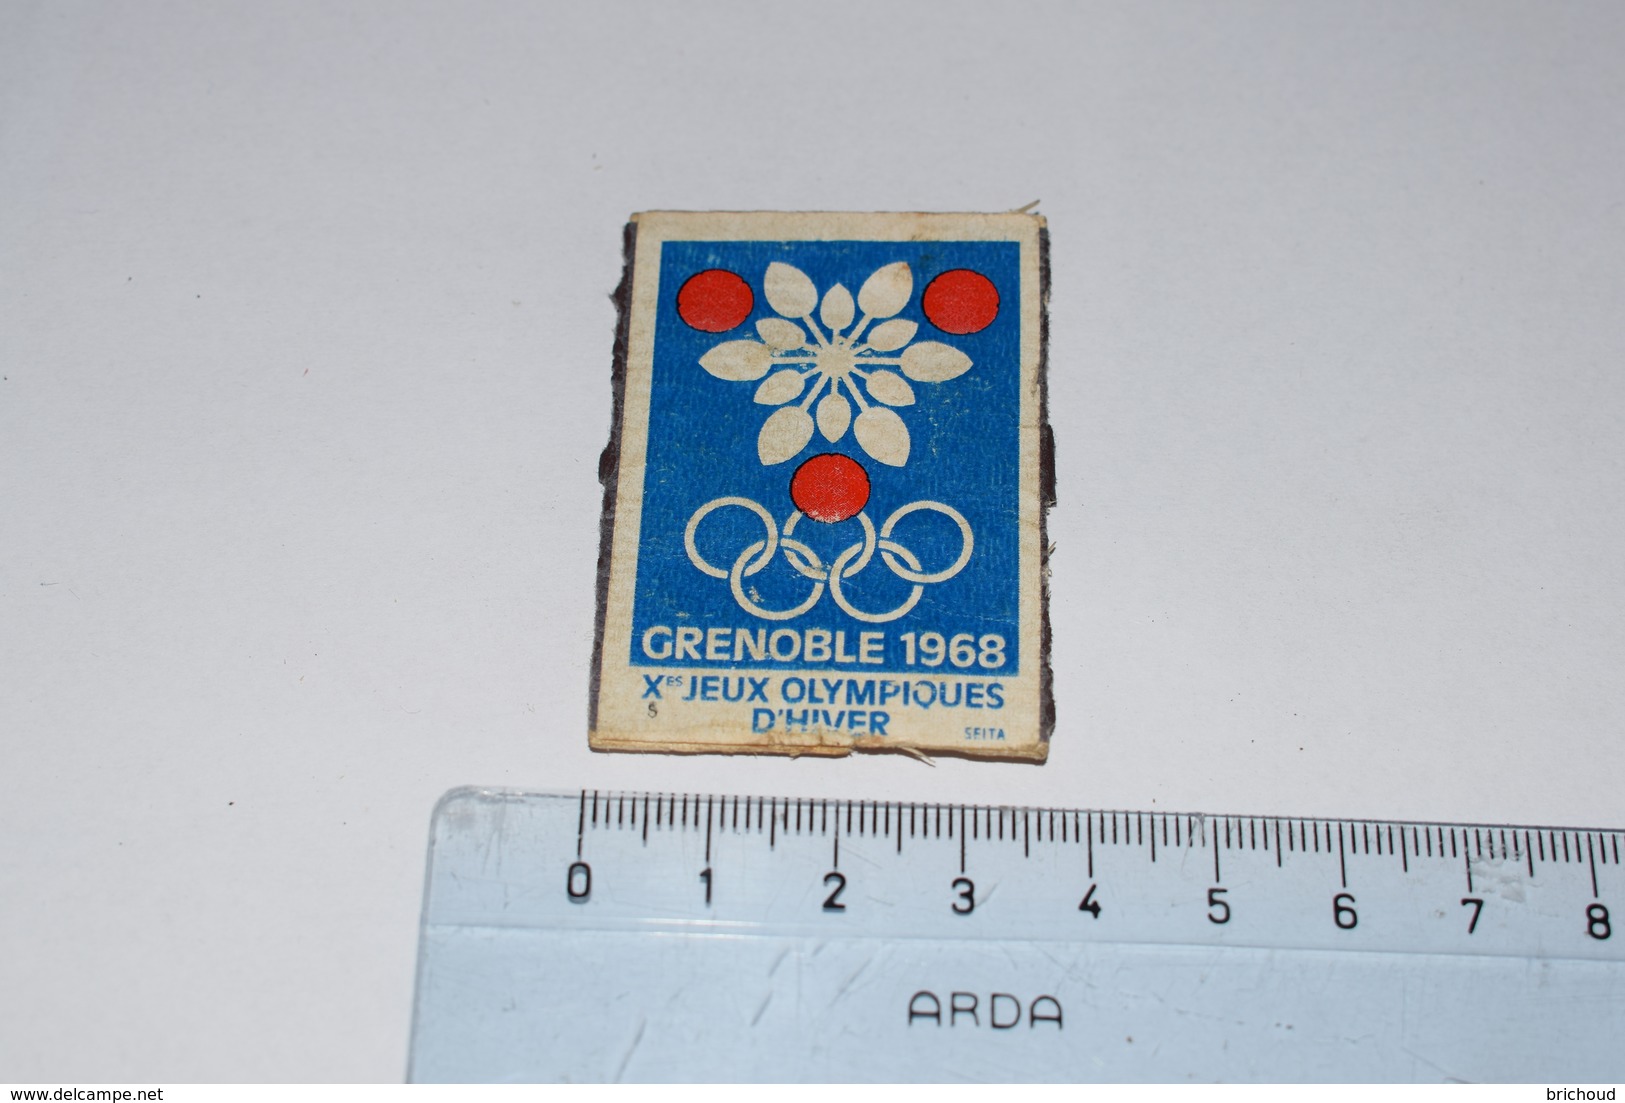 Grenoble 1968 Xème Jeux Olympiques D'Hiver Seita - Boites D'allumettes - Etiquettes